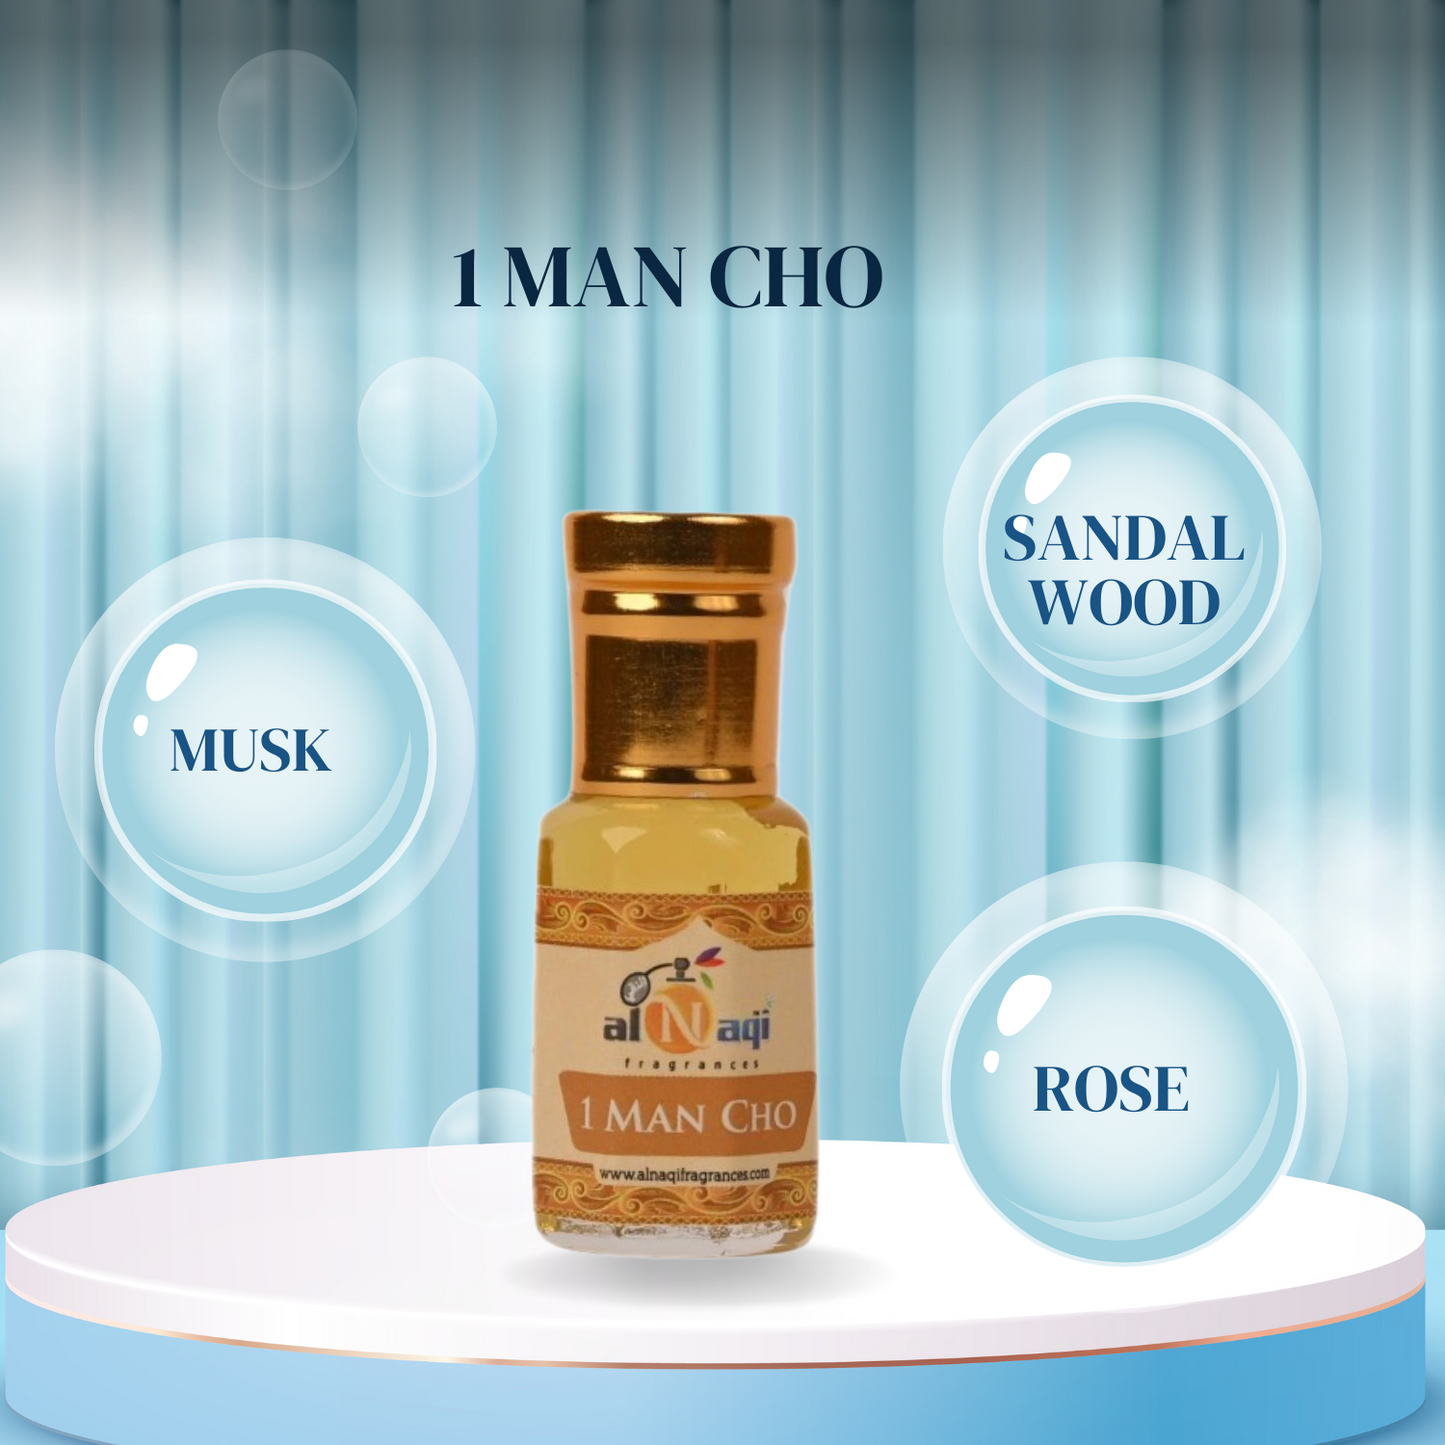 "Luxury 1 Man Cho Attar Fragrance"